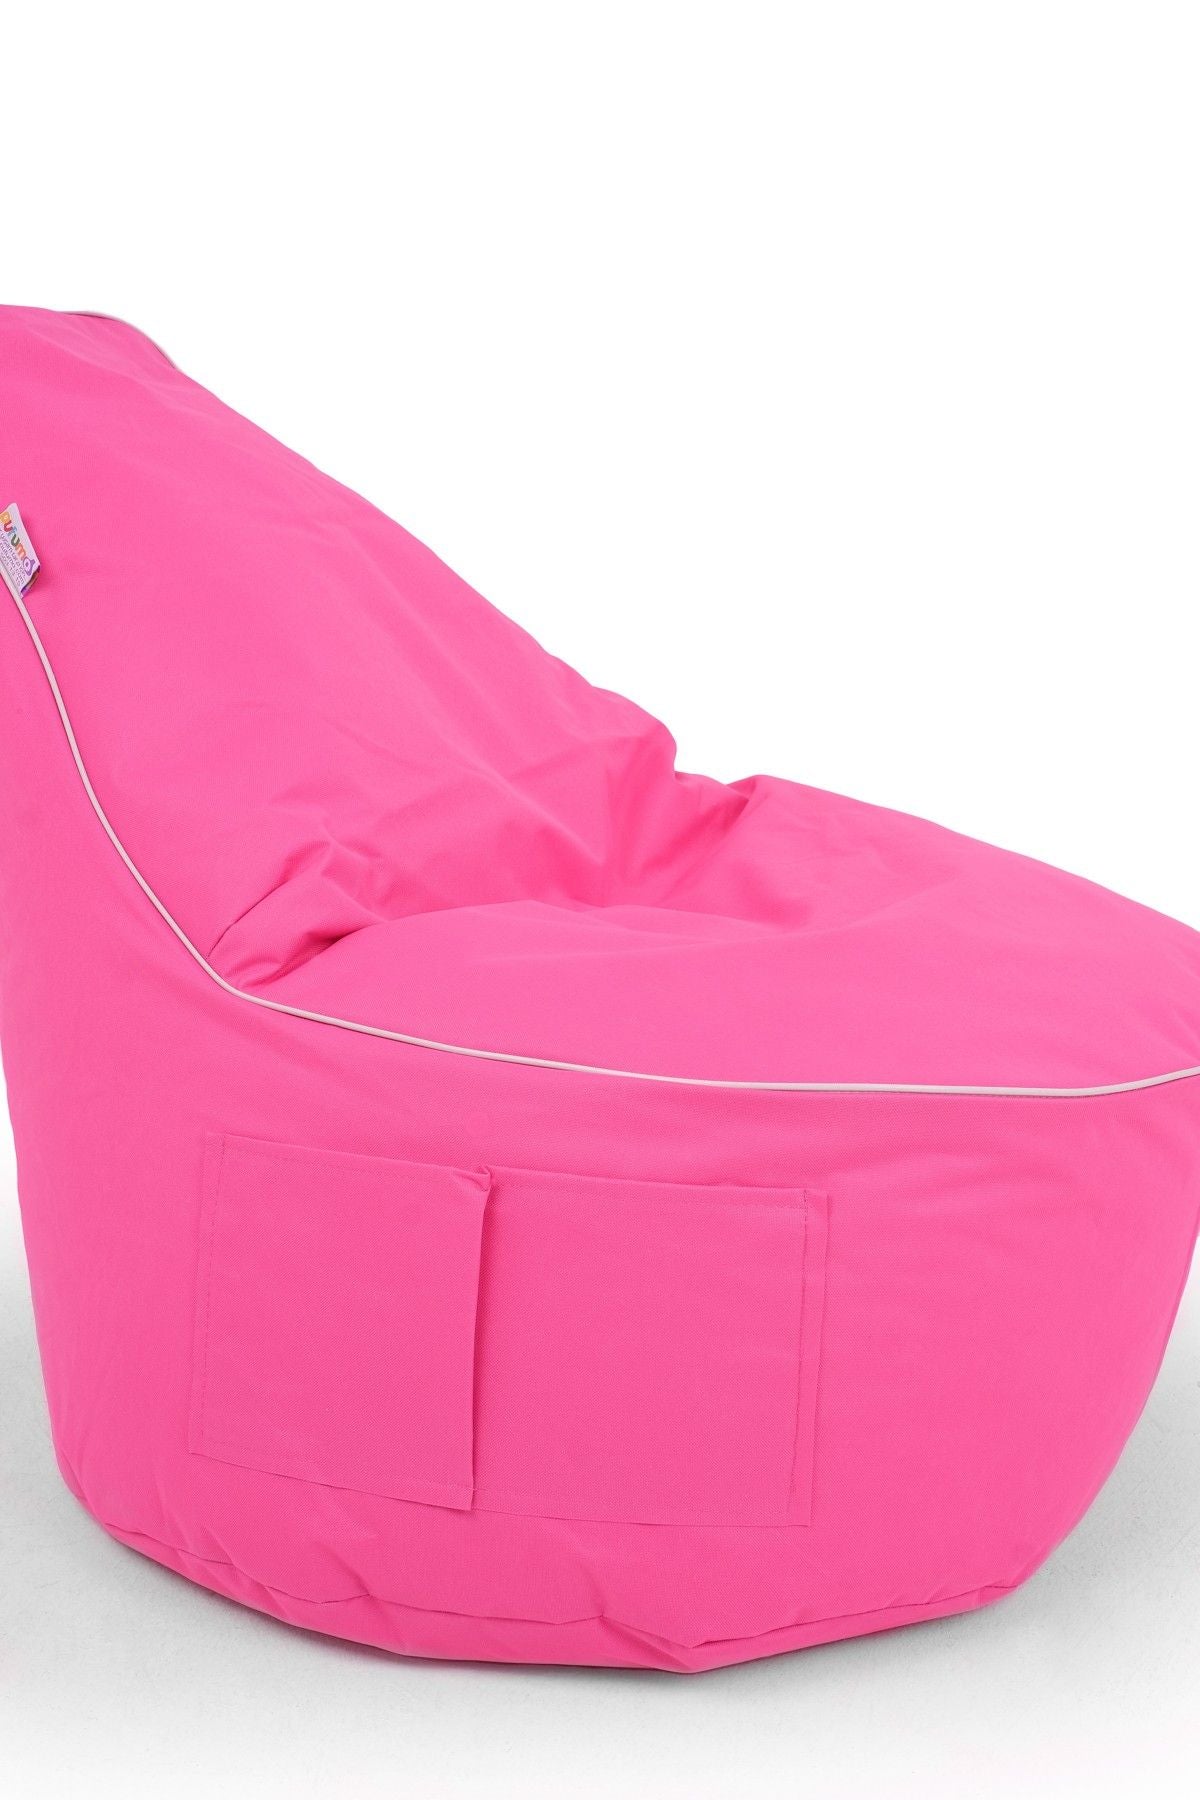 Golf - Pink - Bean Bag